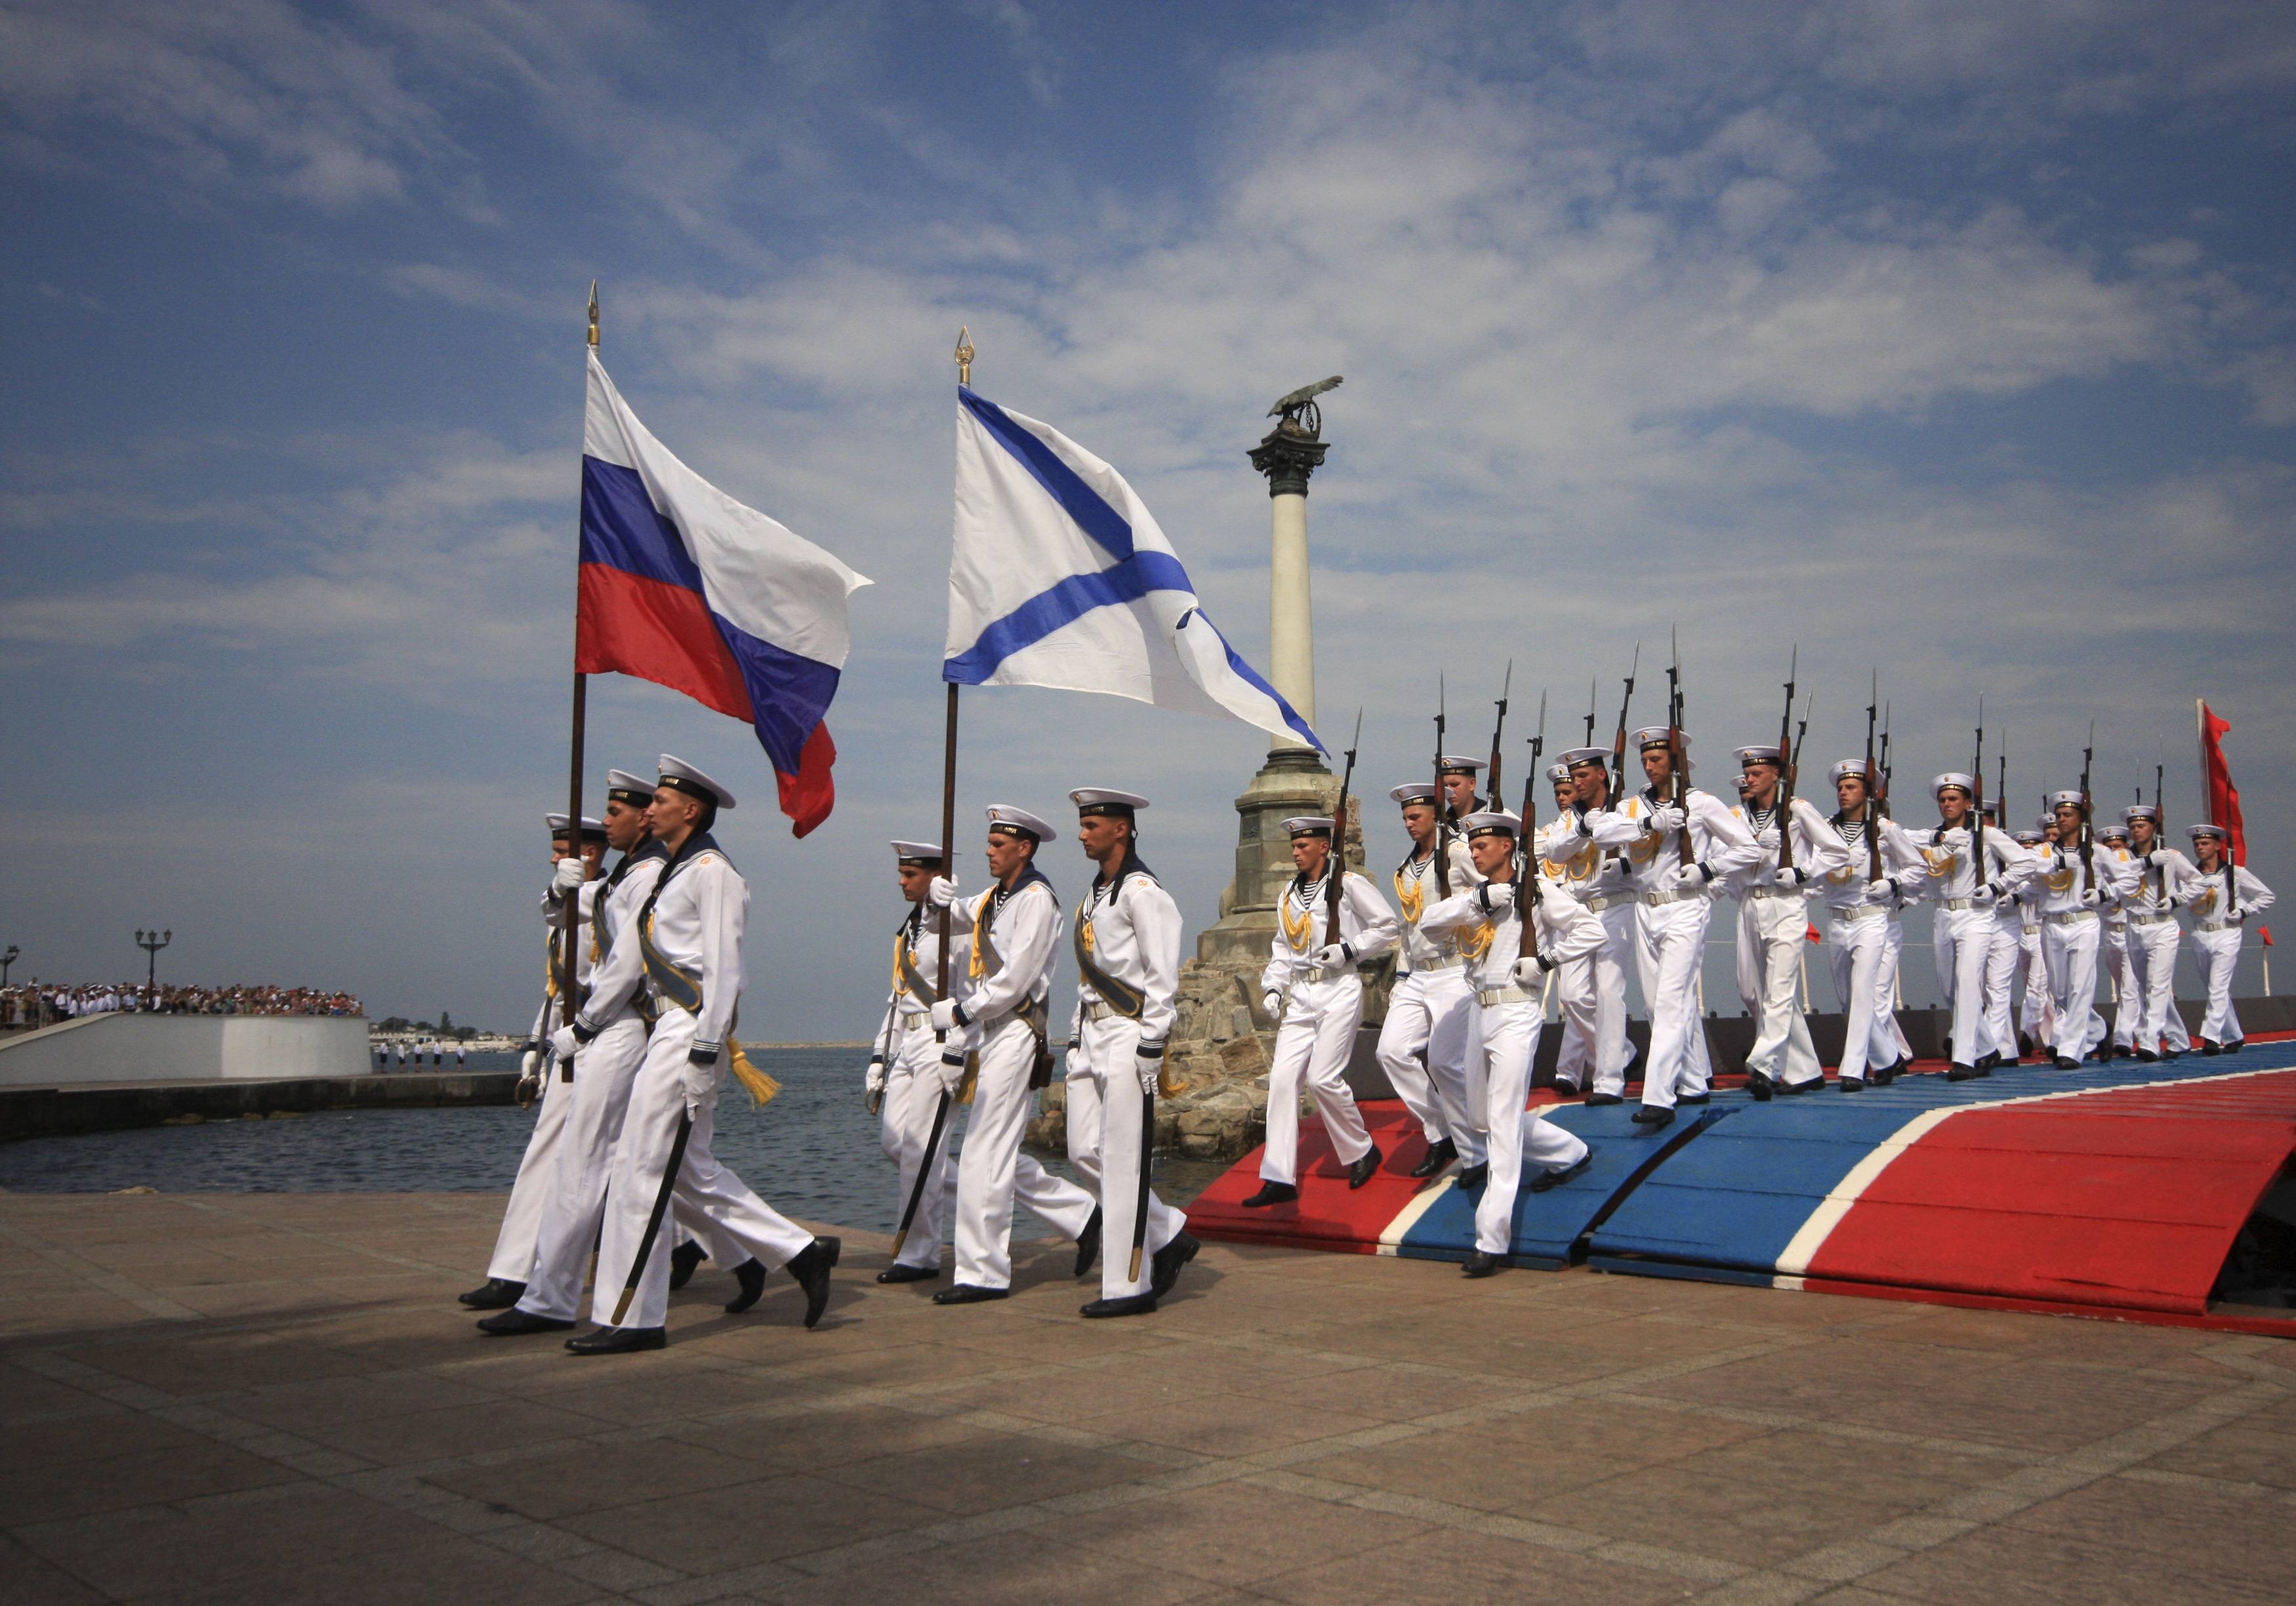 Ρωσική επίδειξη ισχύος στην Κριμαία - Φωτογραφία 2